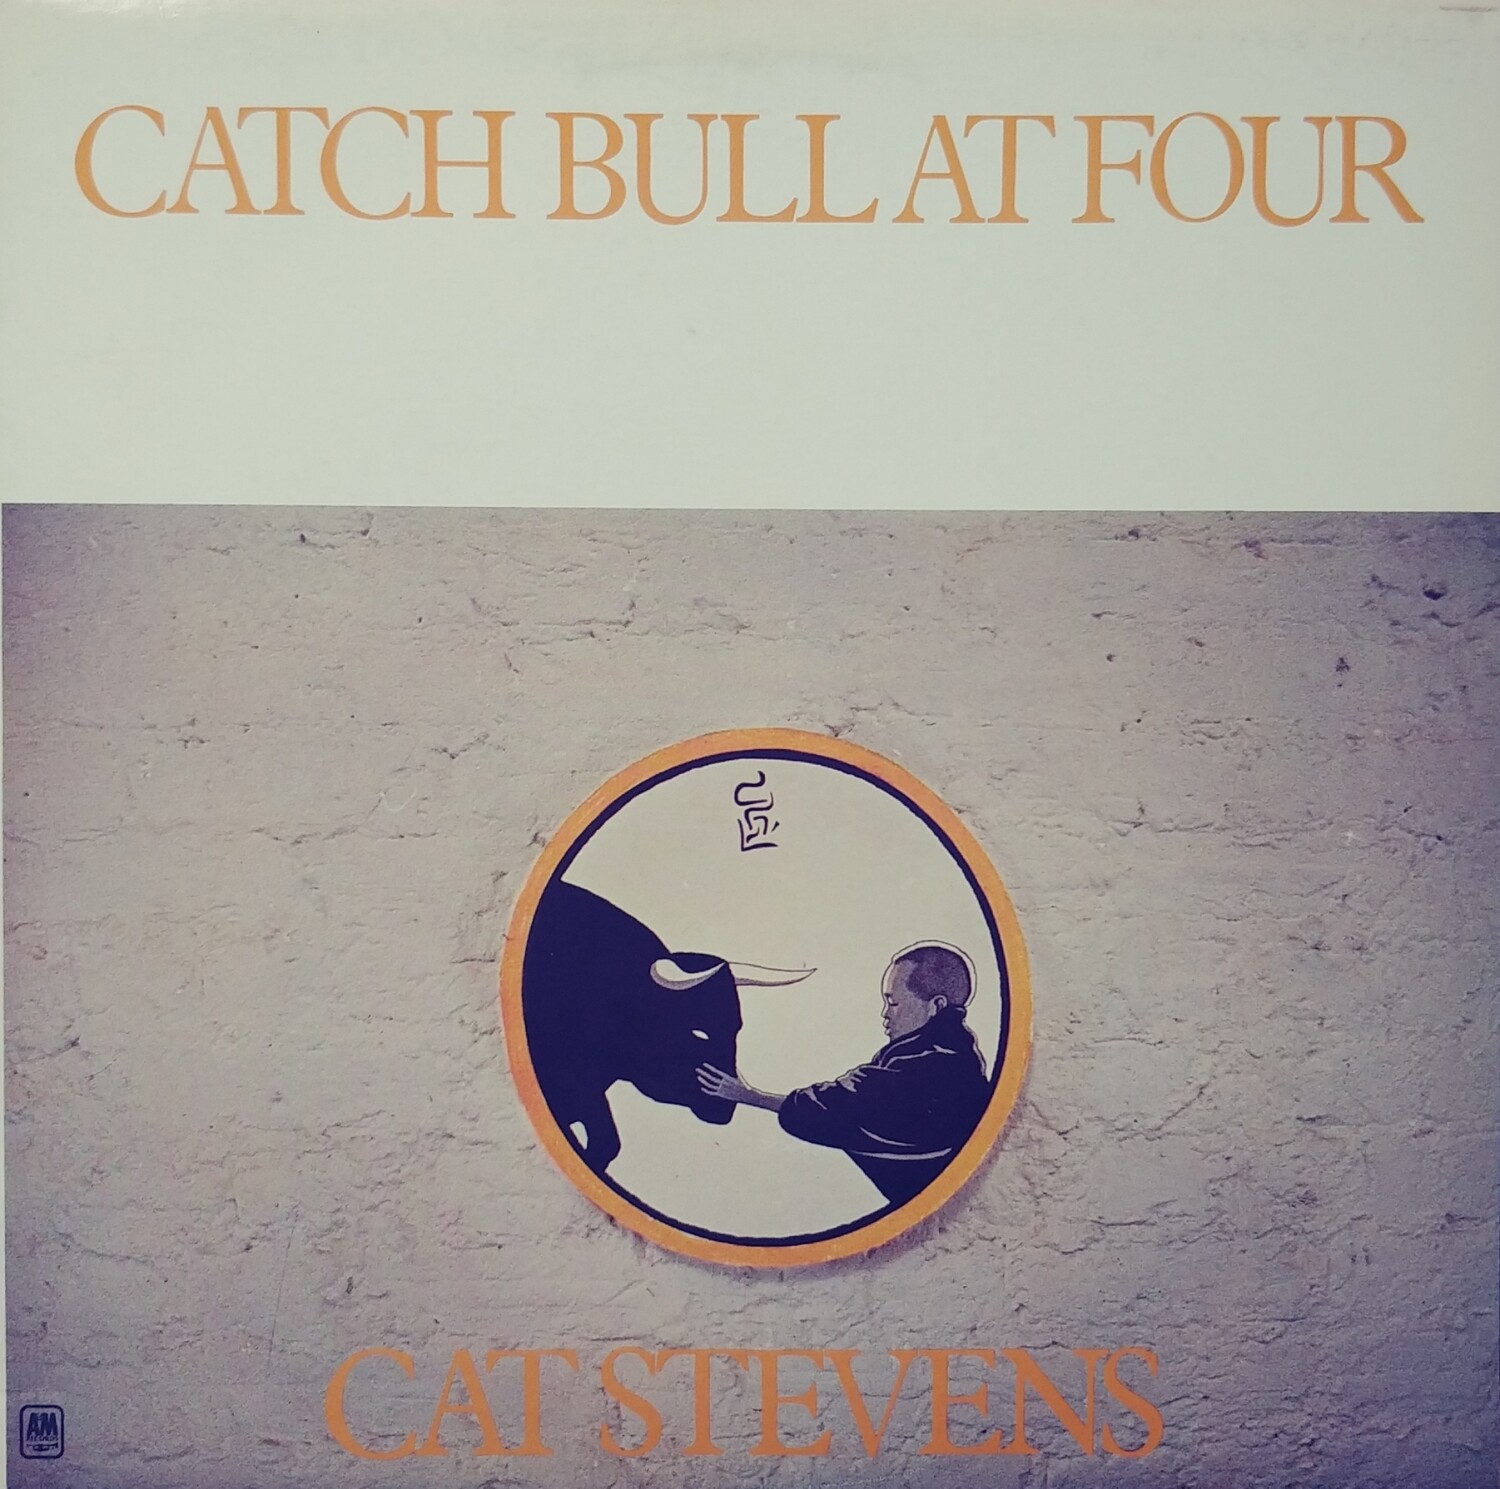 Cat Stevens - Catch bull at four